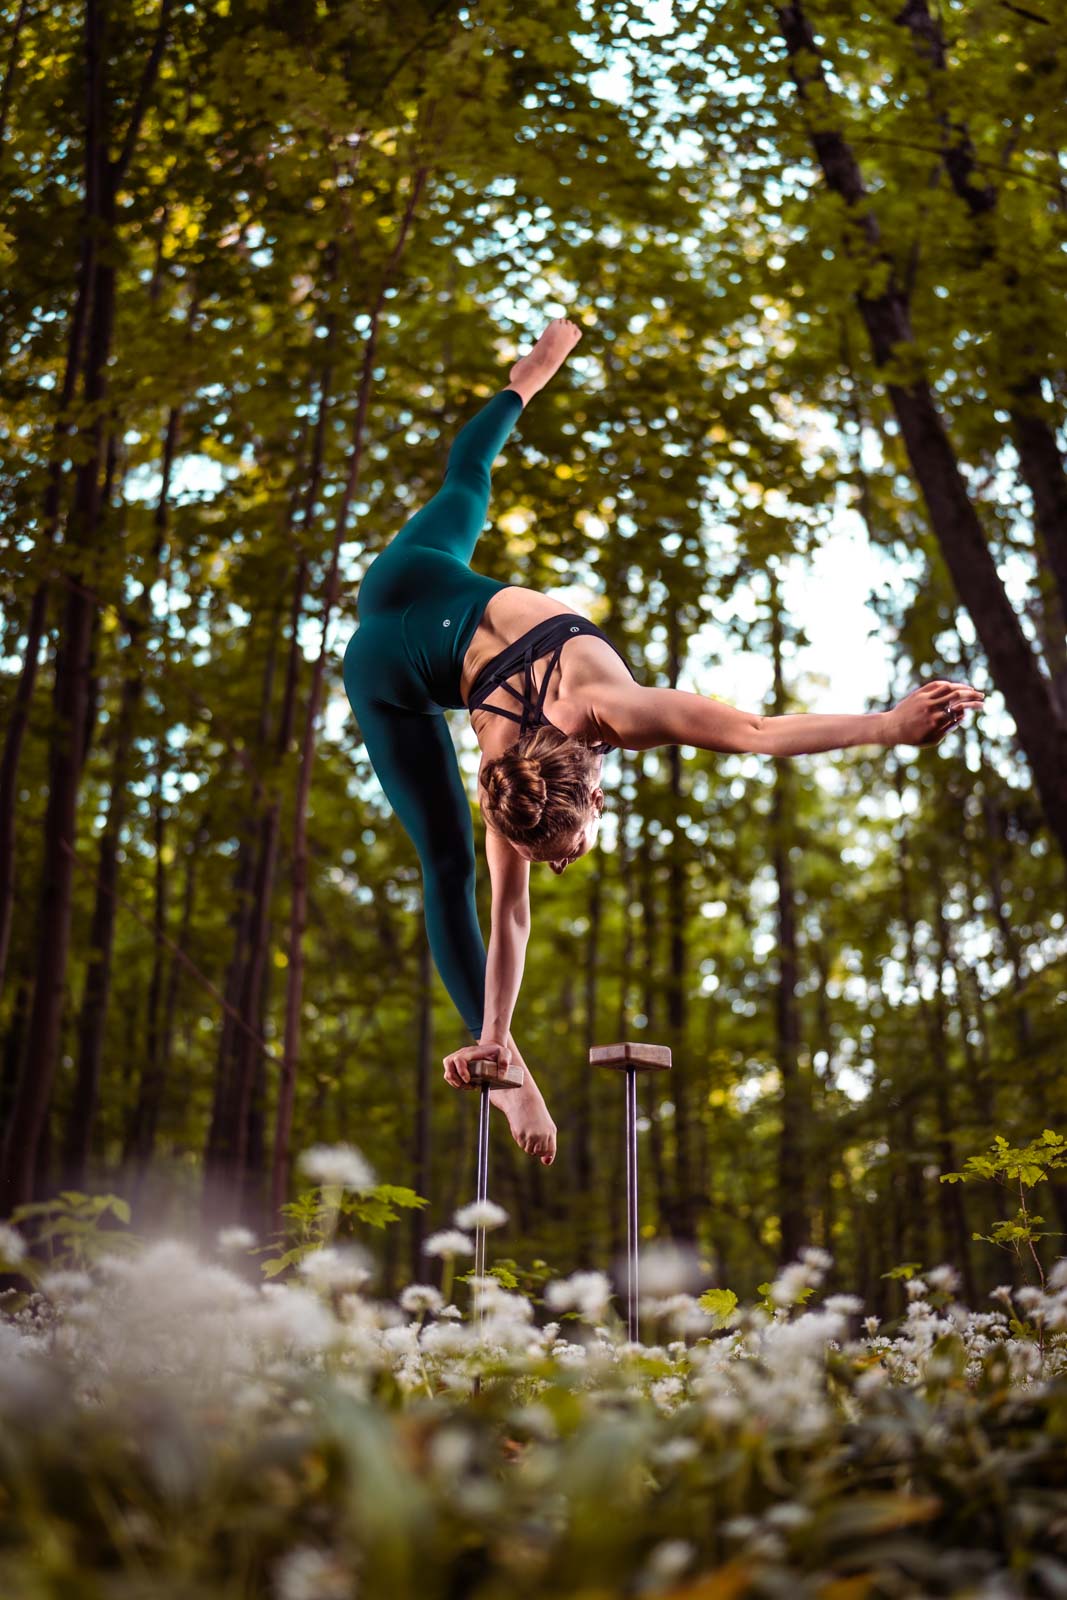 Handstand-Akrobatin biegt sich im Handstand zur Seite. Sie steht auf Metallstäben im Wald.